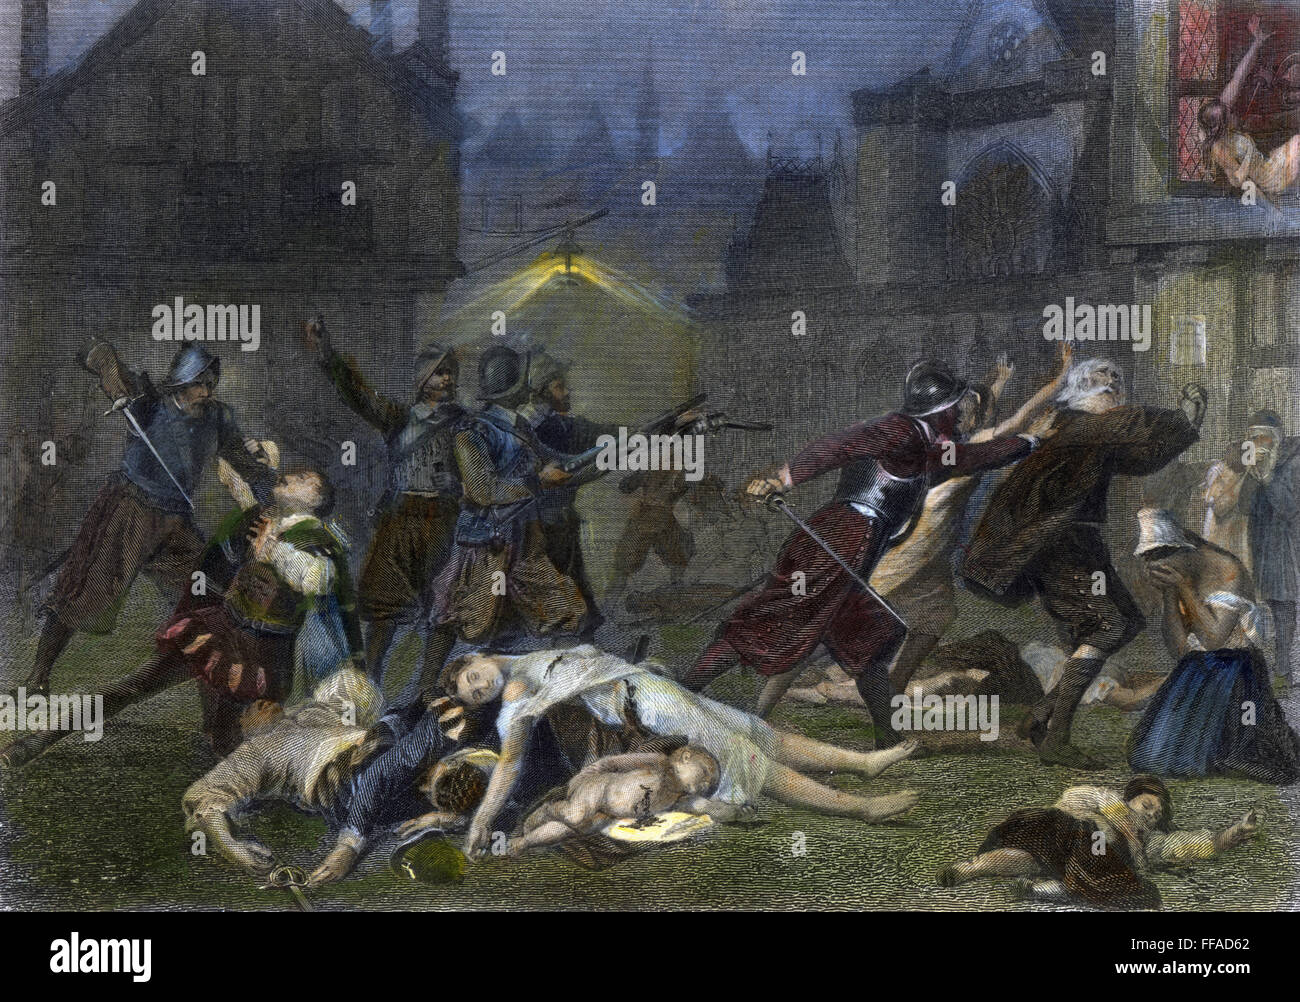 Masacre: hugonotes, 1572. /Nel masacre de hugonotes en París, Francia, del Día de San Bartolomé, el 24 de agosto de 1572. Acero grabado, Americana, 1870, después de una pintura de Alonzo Chappel. Foto de stock